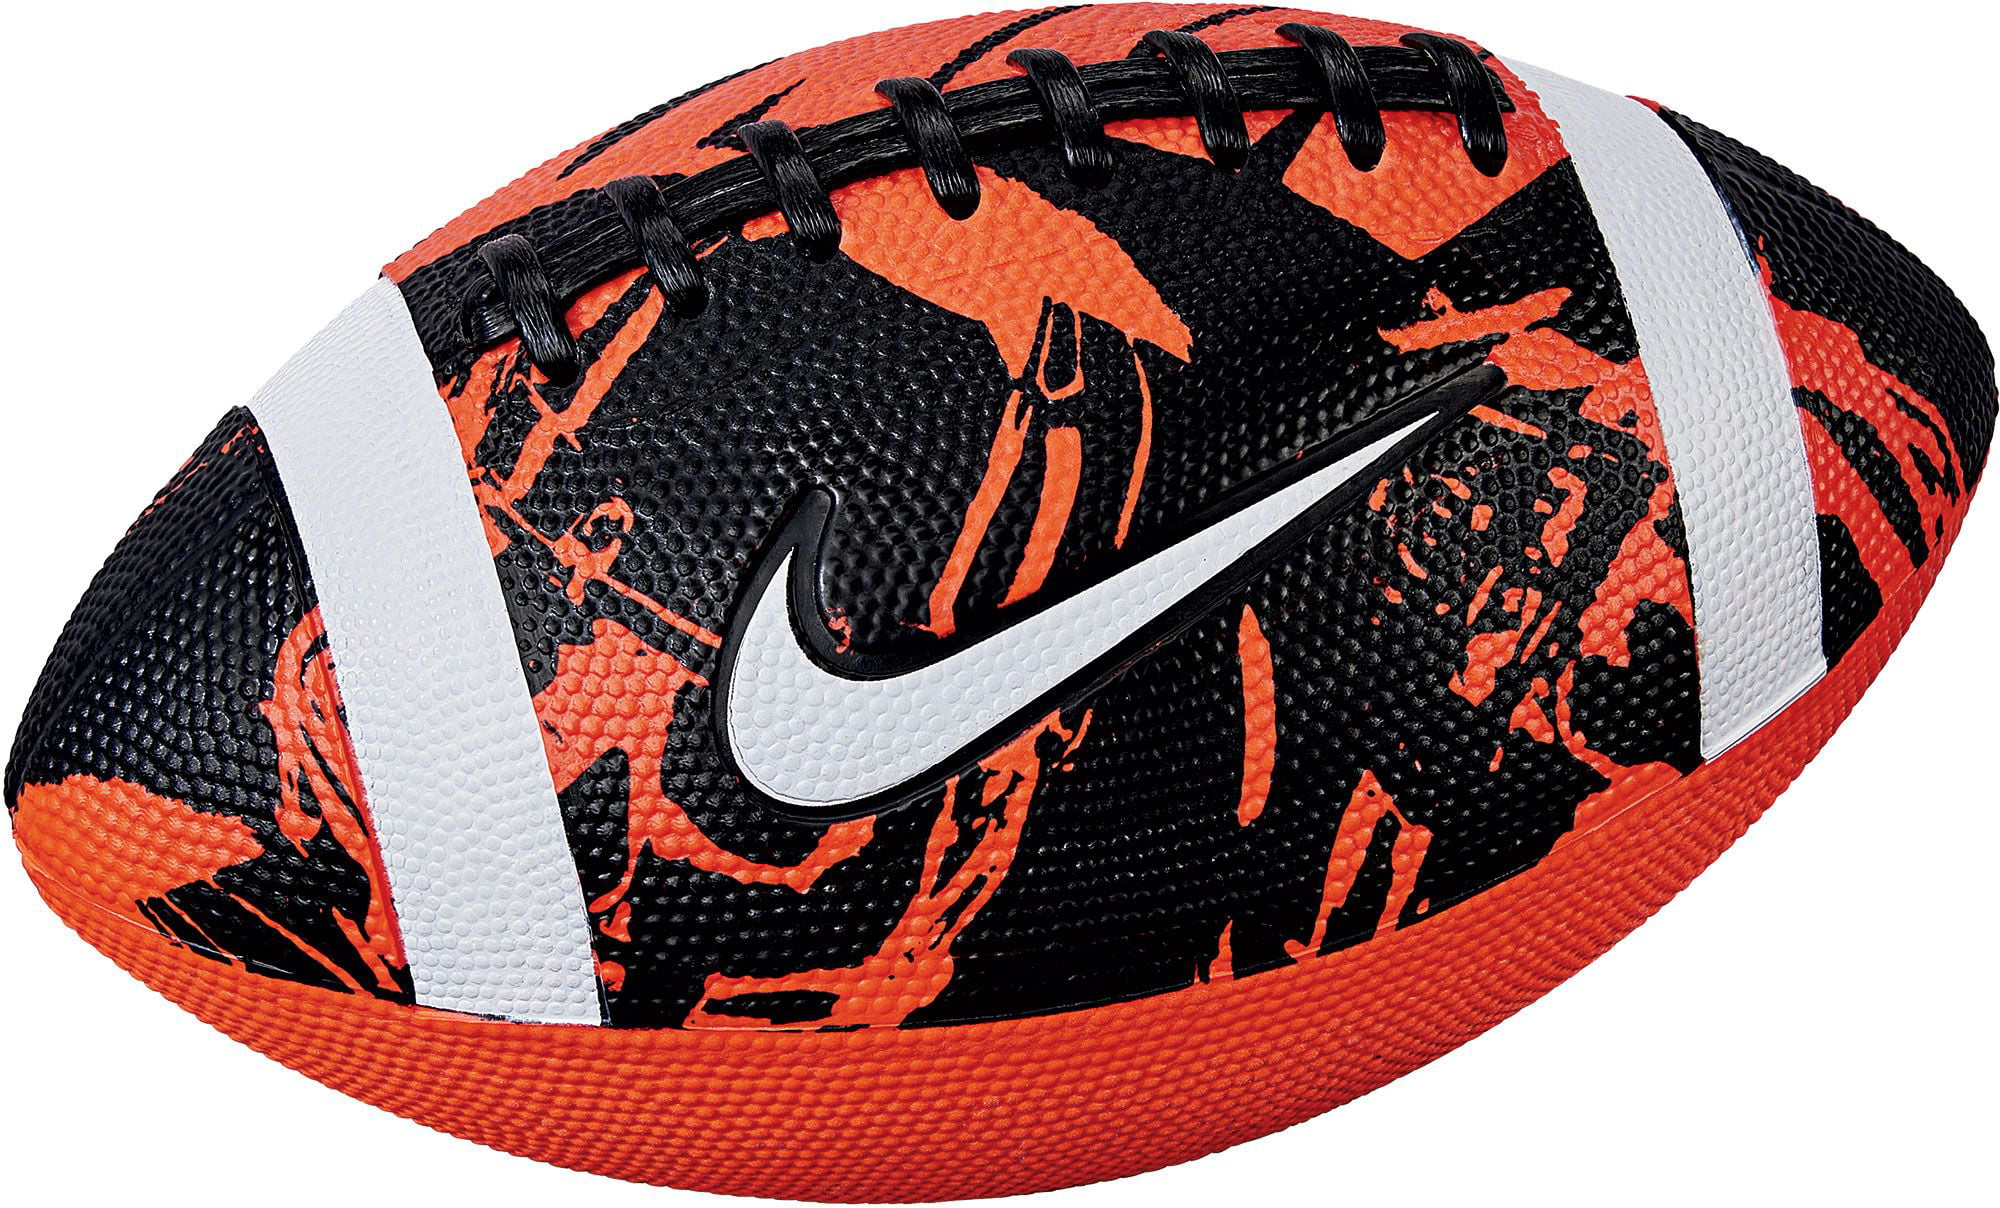 Сайт найк оригинал. Найк мяч для американского футбола 1000. Футбольный Nike Loder 4. Найк аксессуары для футбола. Оригинальный найк найк мяч.